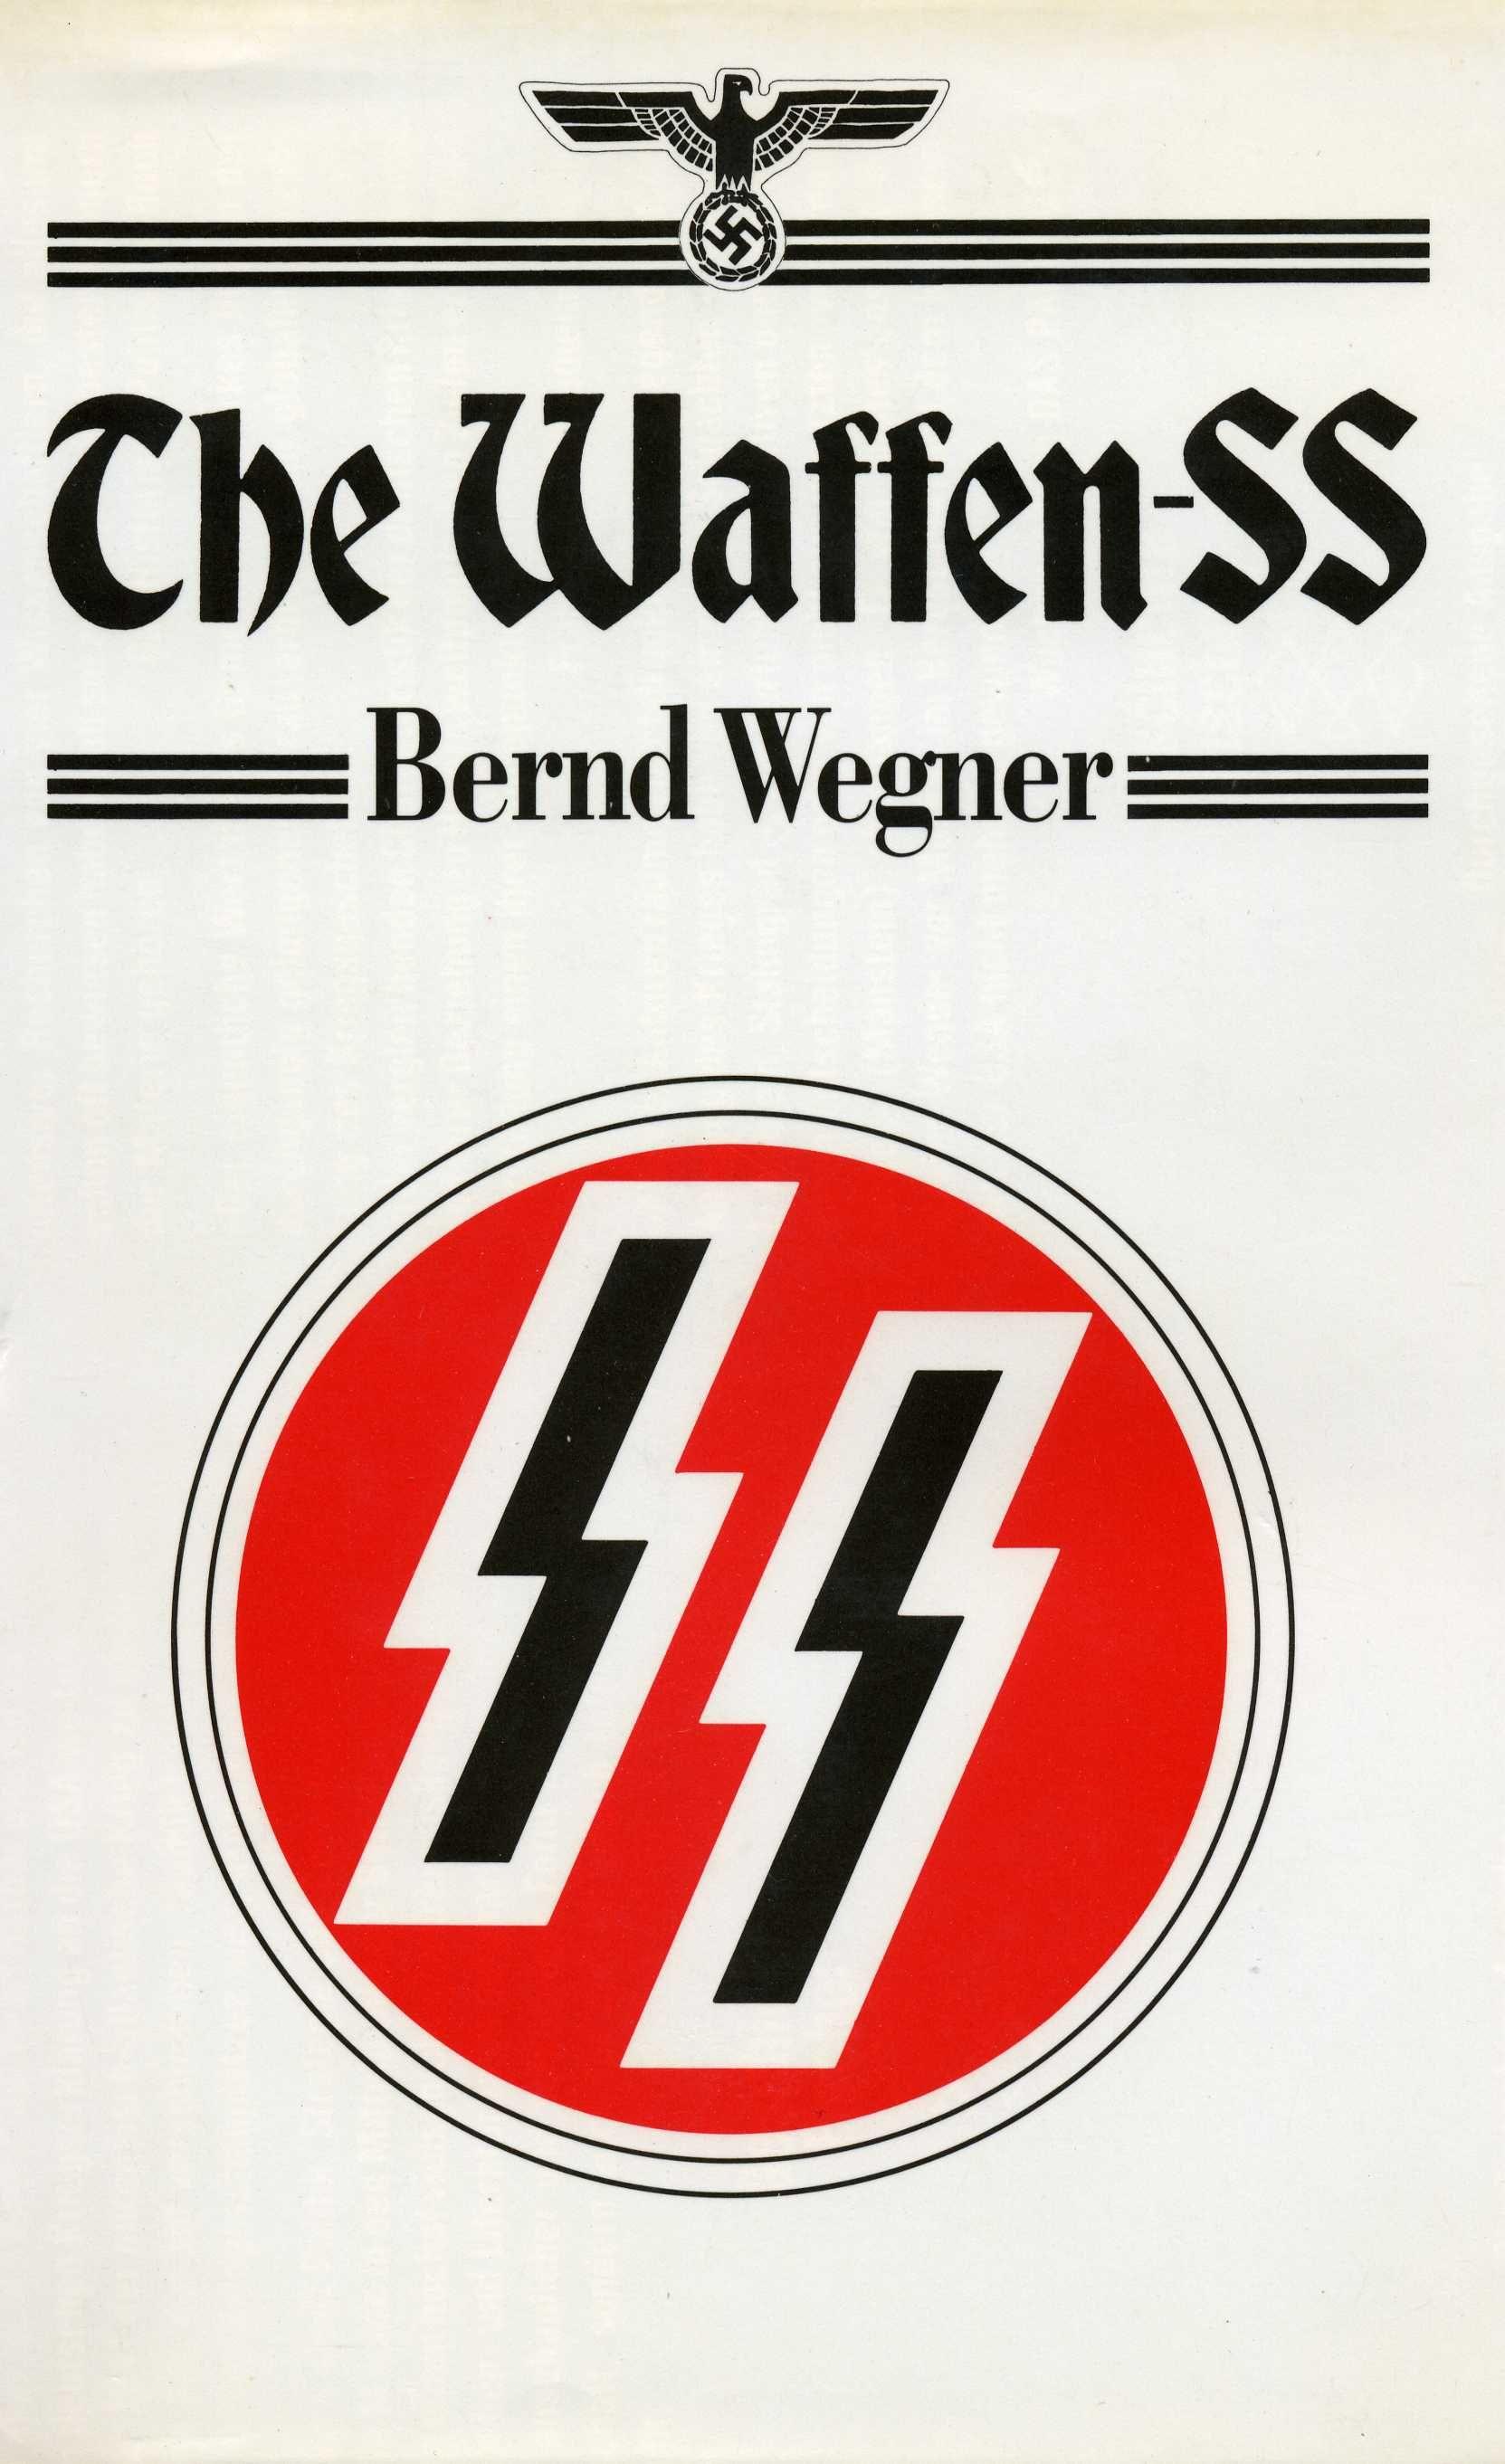 Nazi SS Logo - Nazi SS Emblems for Battlefield Battlefield Battlefield